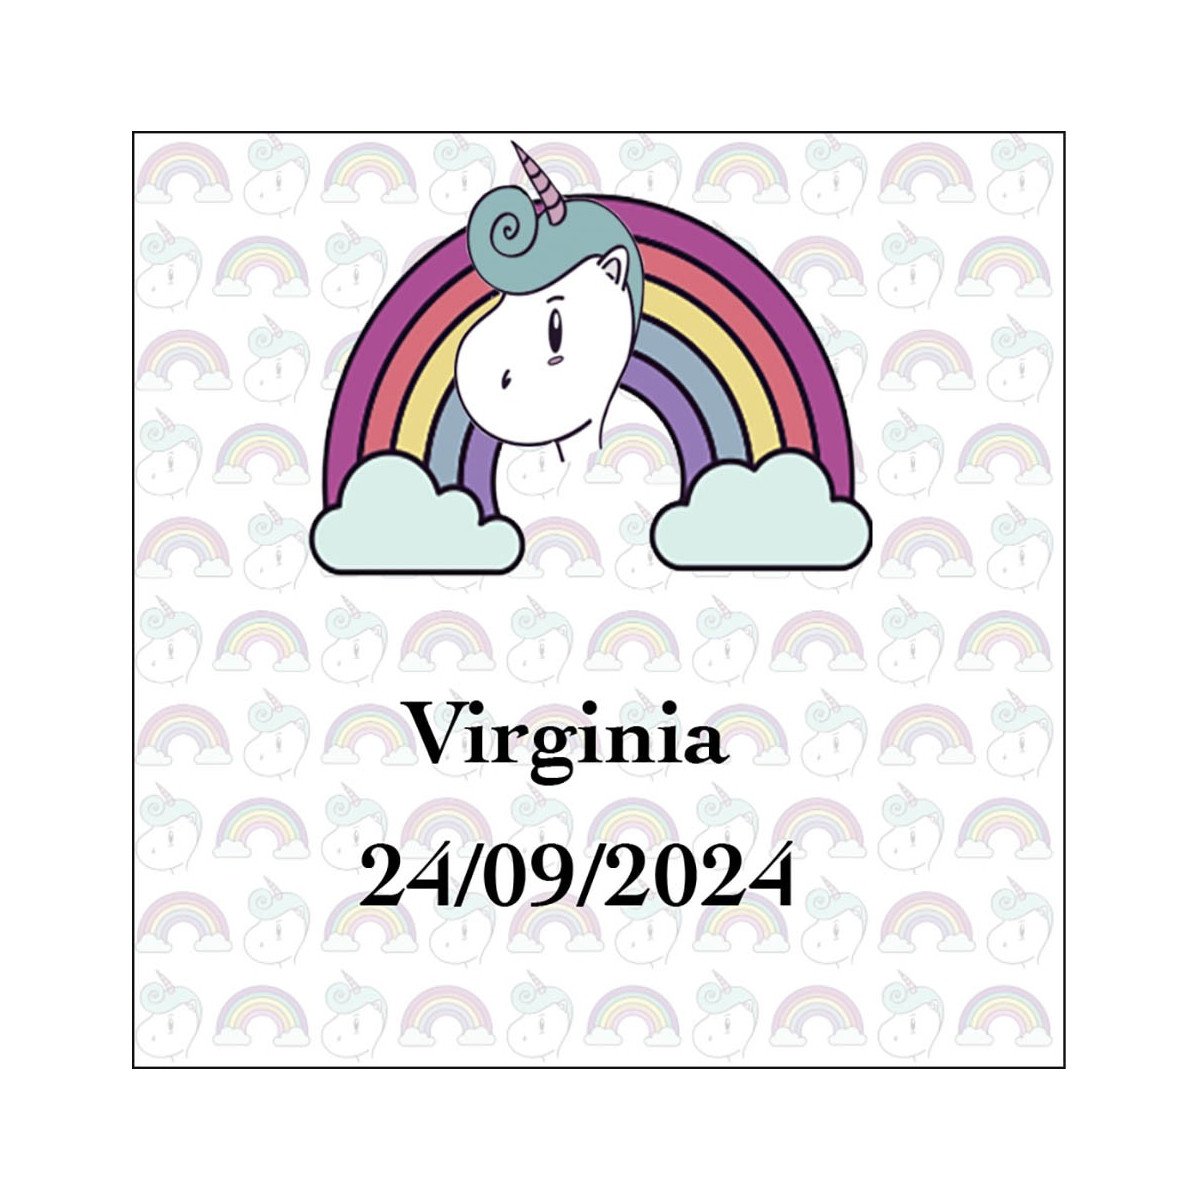 Adhesivo unicornio arcoíris cuadrado personalizado con nombre y fecha para bodas bautizos cumpleaños comuniones y empresas